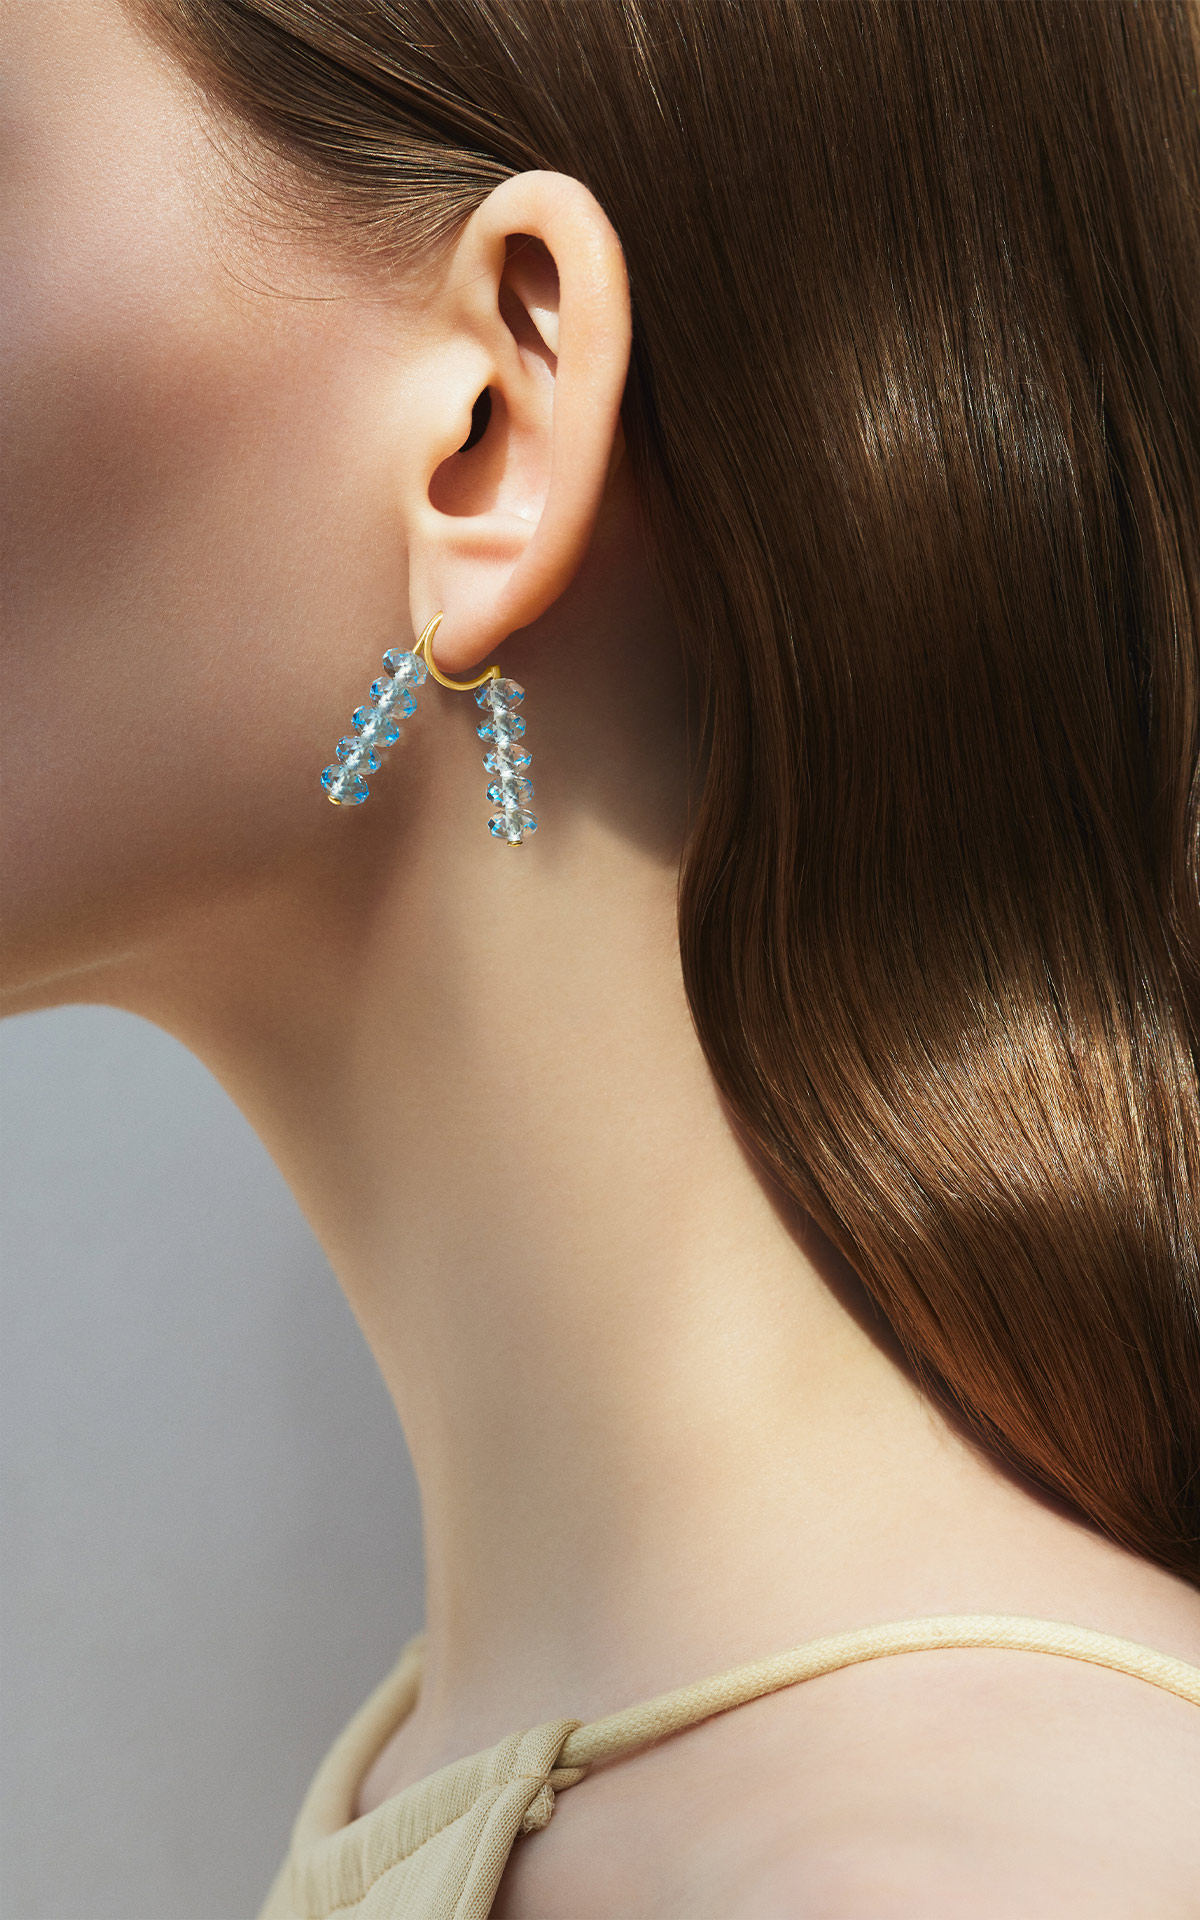 AHKAH spring sequin earring (blue topaz)